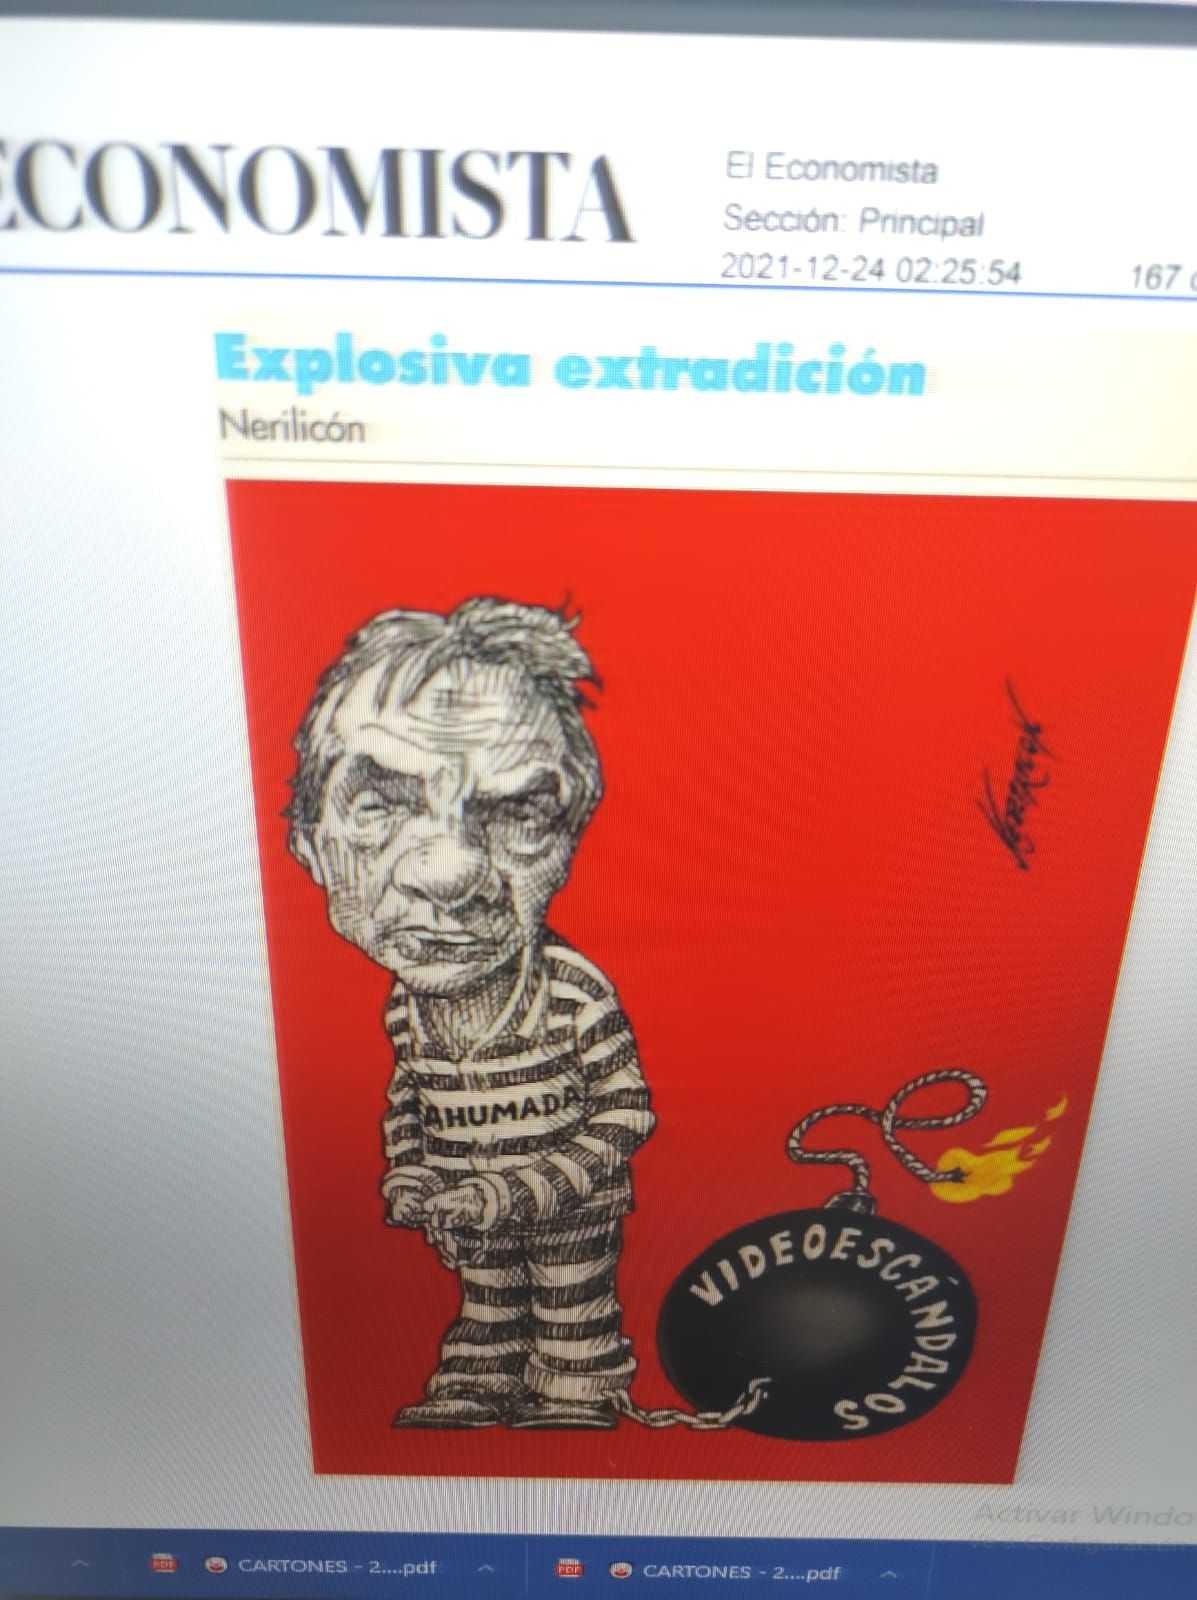 #El cartón de Nerilicon publicado hoy en El Economista 